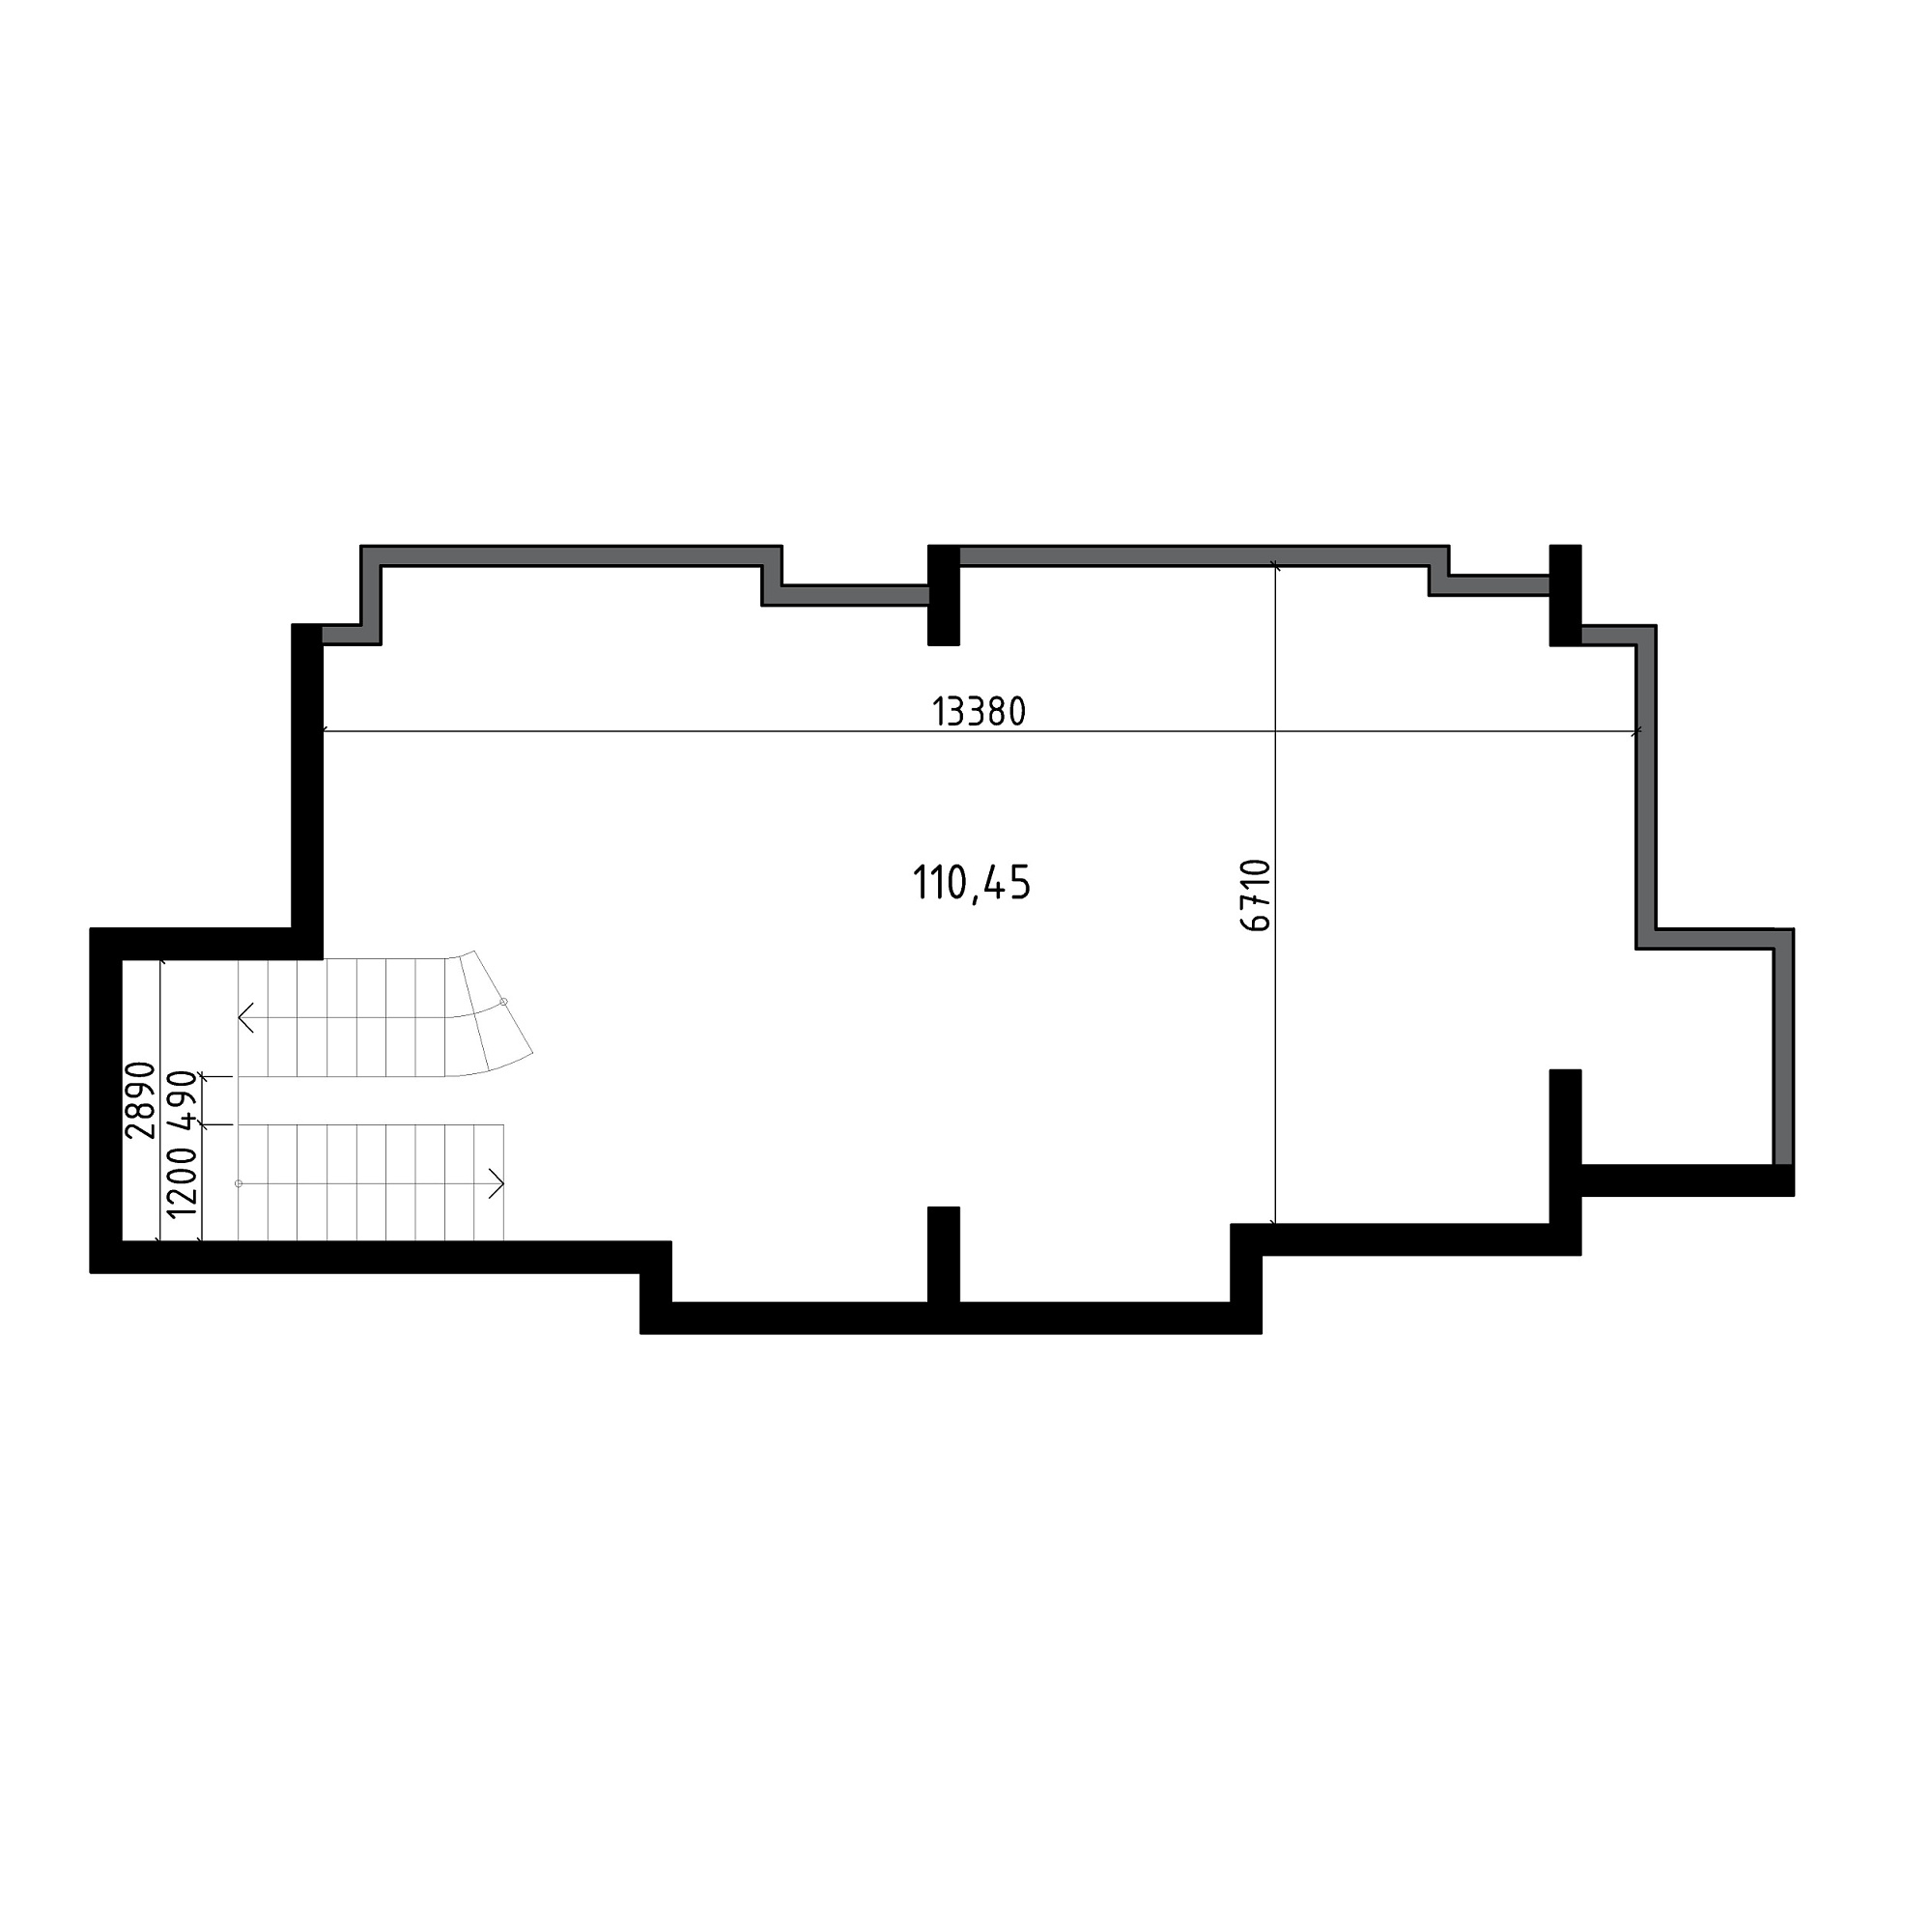 Планування Комерційні площею 110.45м2, AB-05-м1/Т0001.